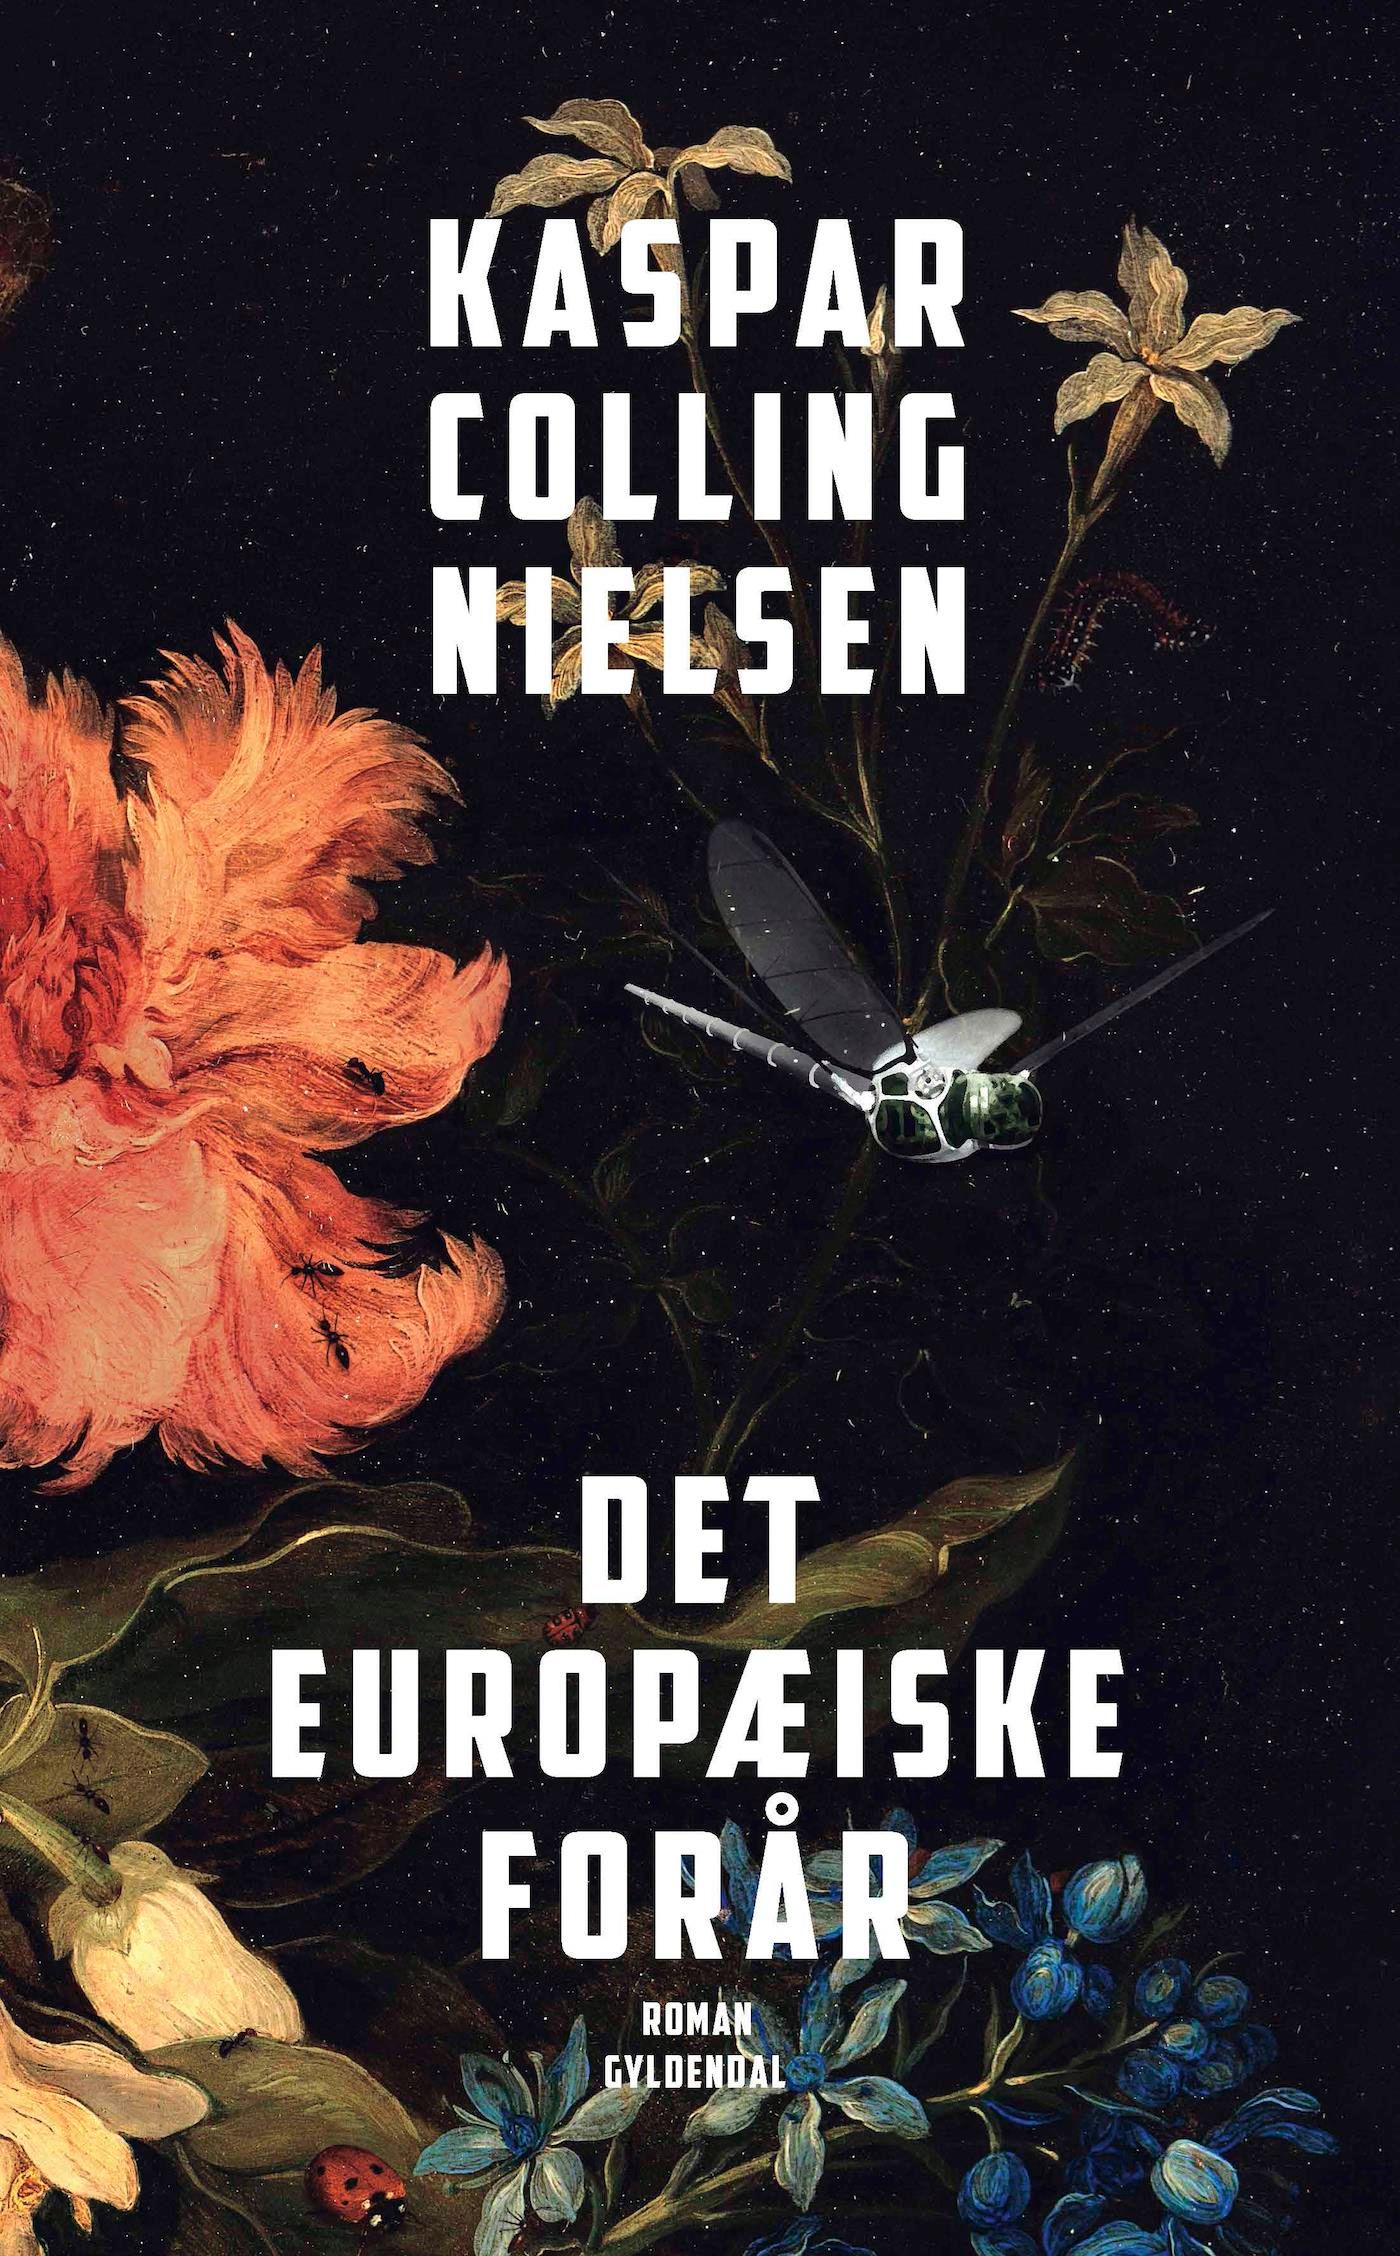 Det europæiske forår, eBook by Kaspar Colling Nielsen